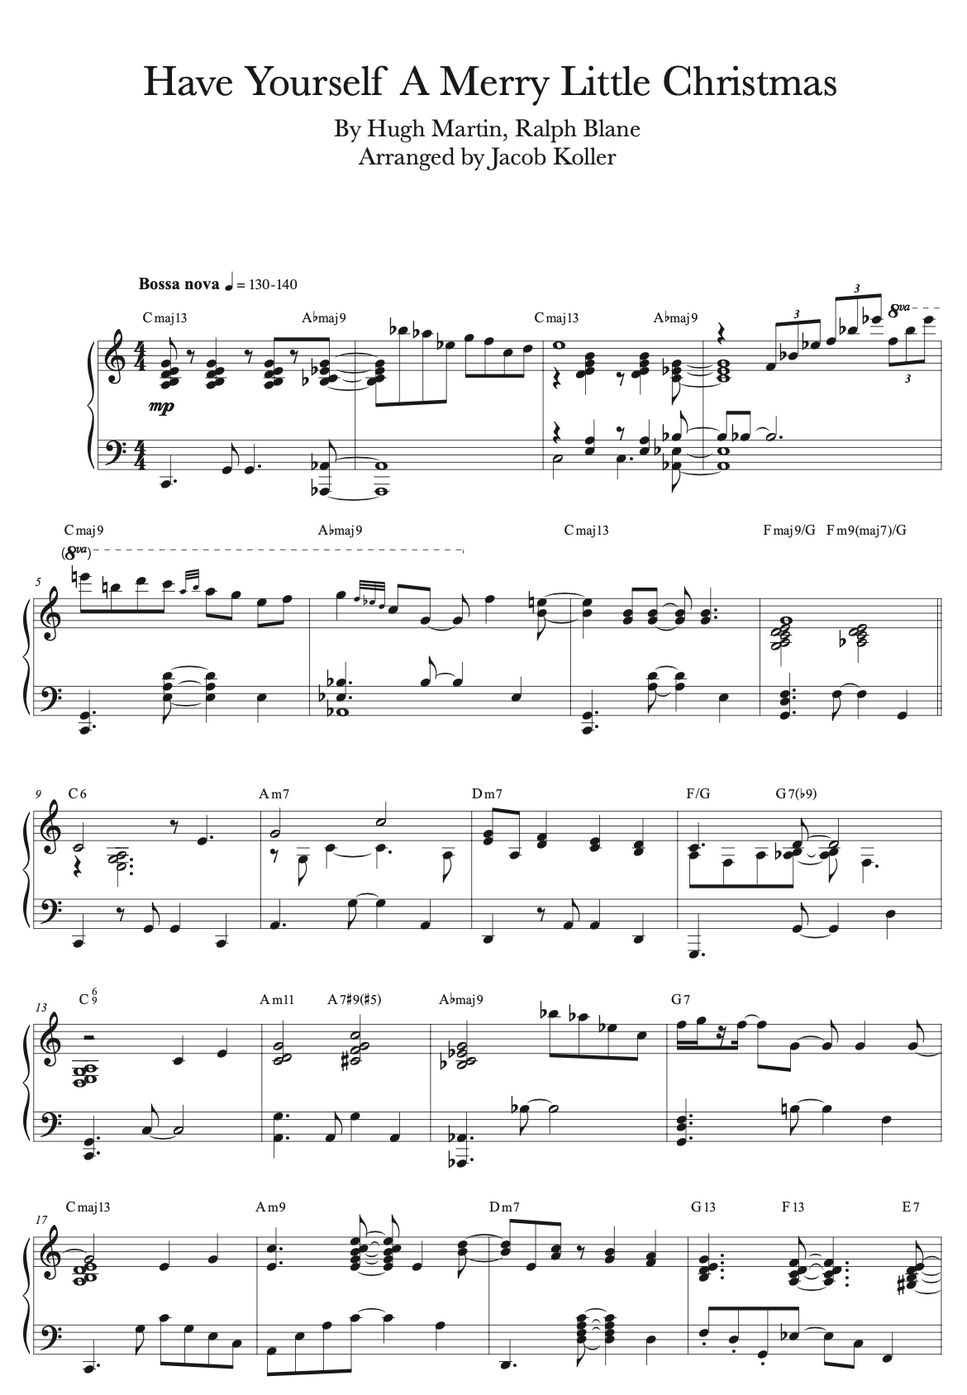 Judy Garland - Have Yourself a Merry Little Christmas (Bossa nova arrangement) by Jacob Koller